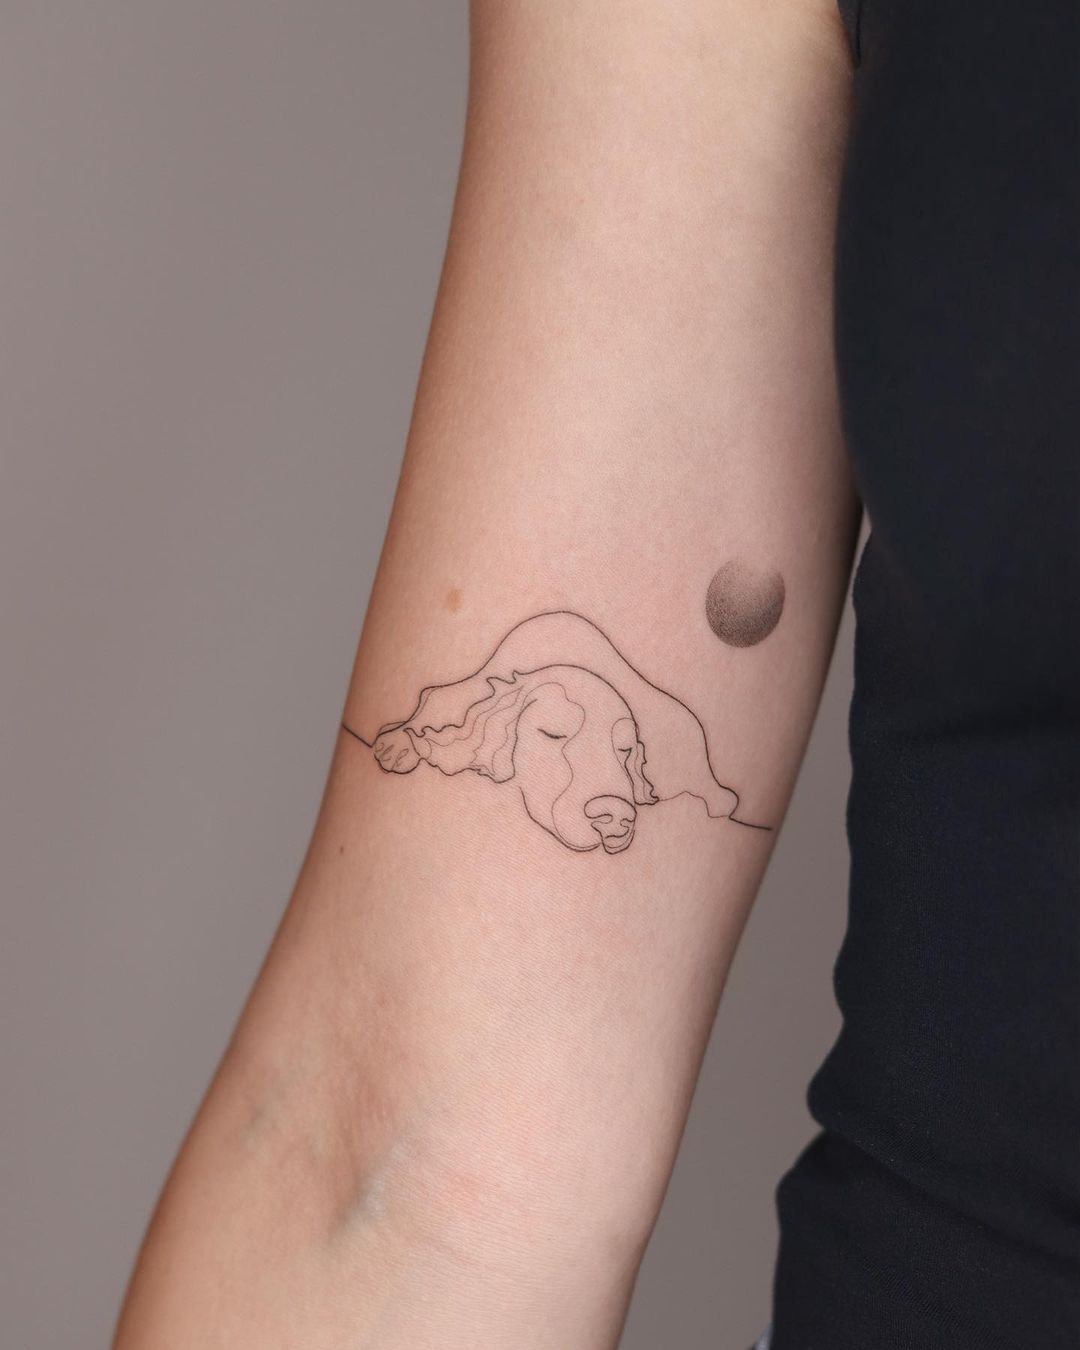 Upper arm dog tattoo by gaja tat